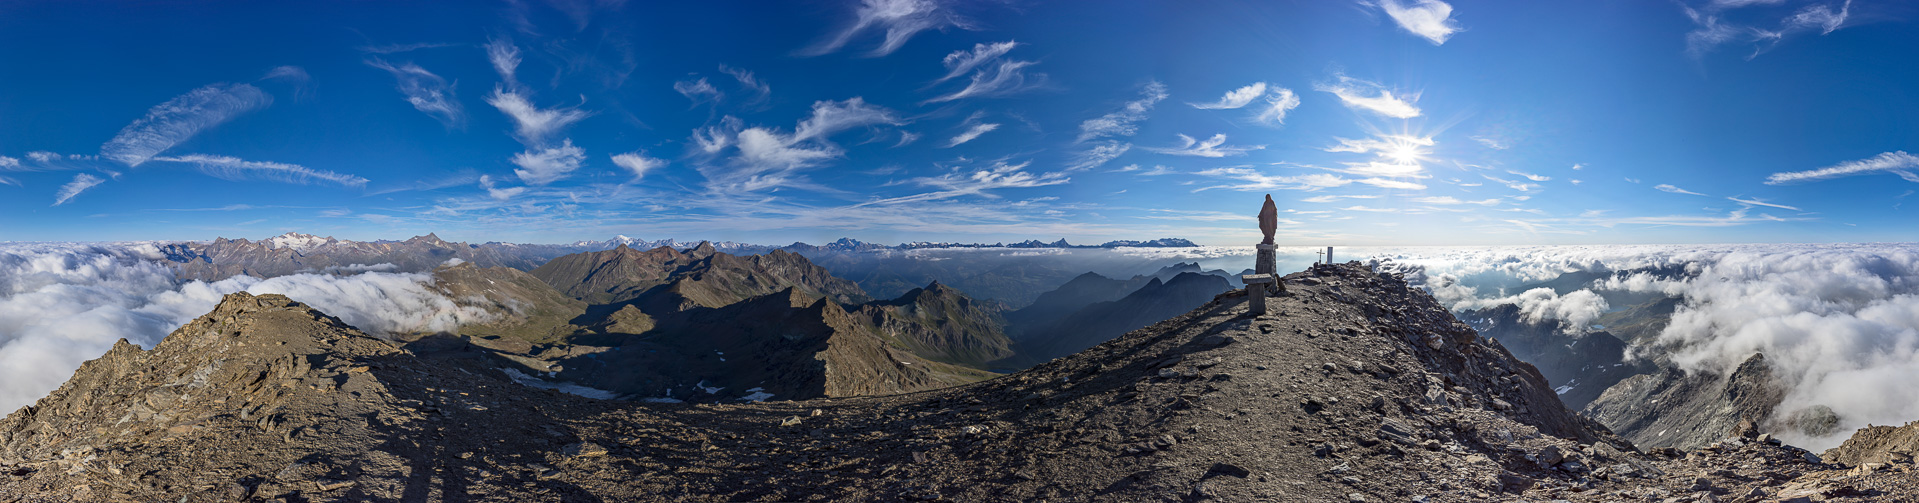 Unglaublich schönes Gipfelpanorama an einem entlegenen Eck der Paradiso-Gruppe.